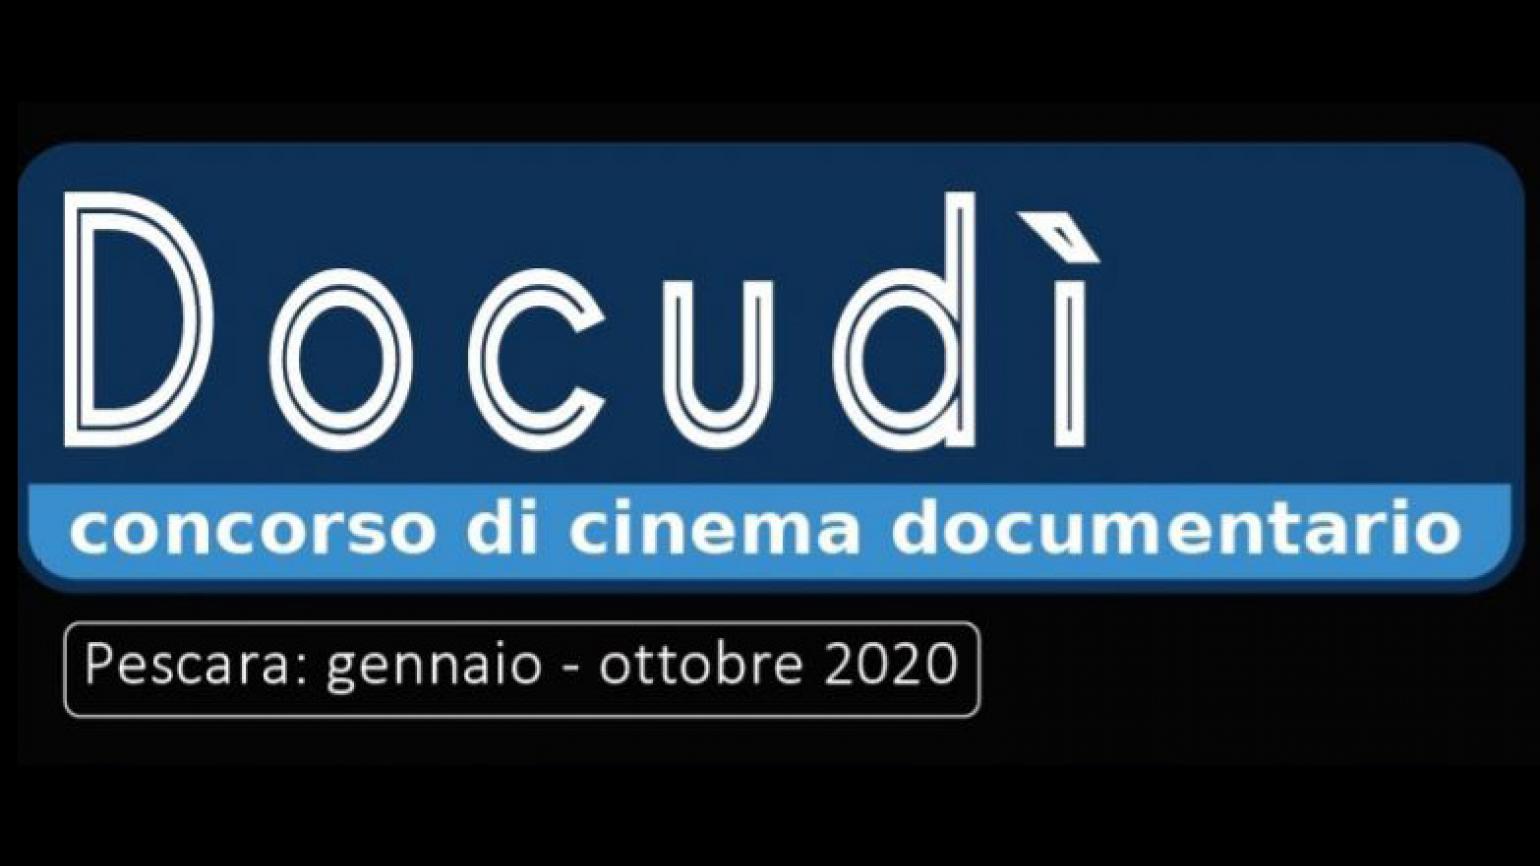 Pescara: riparte #DOCudì2020 concorso di cinema documentario. Sette appuntamenti tra settembre e ottobre al museo Colonna